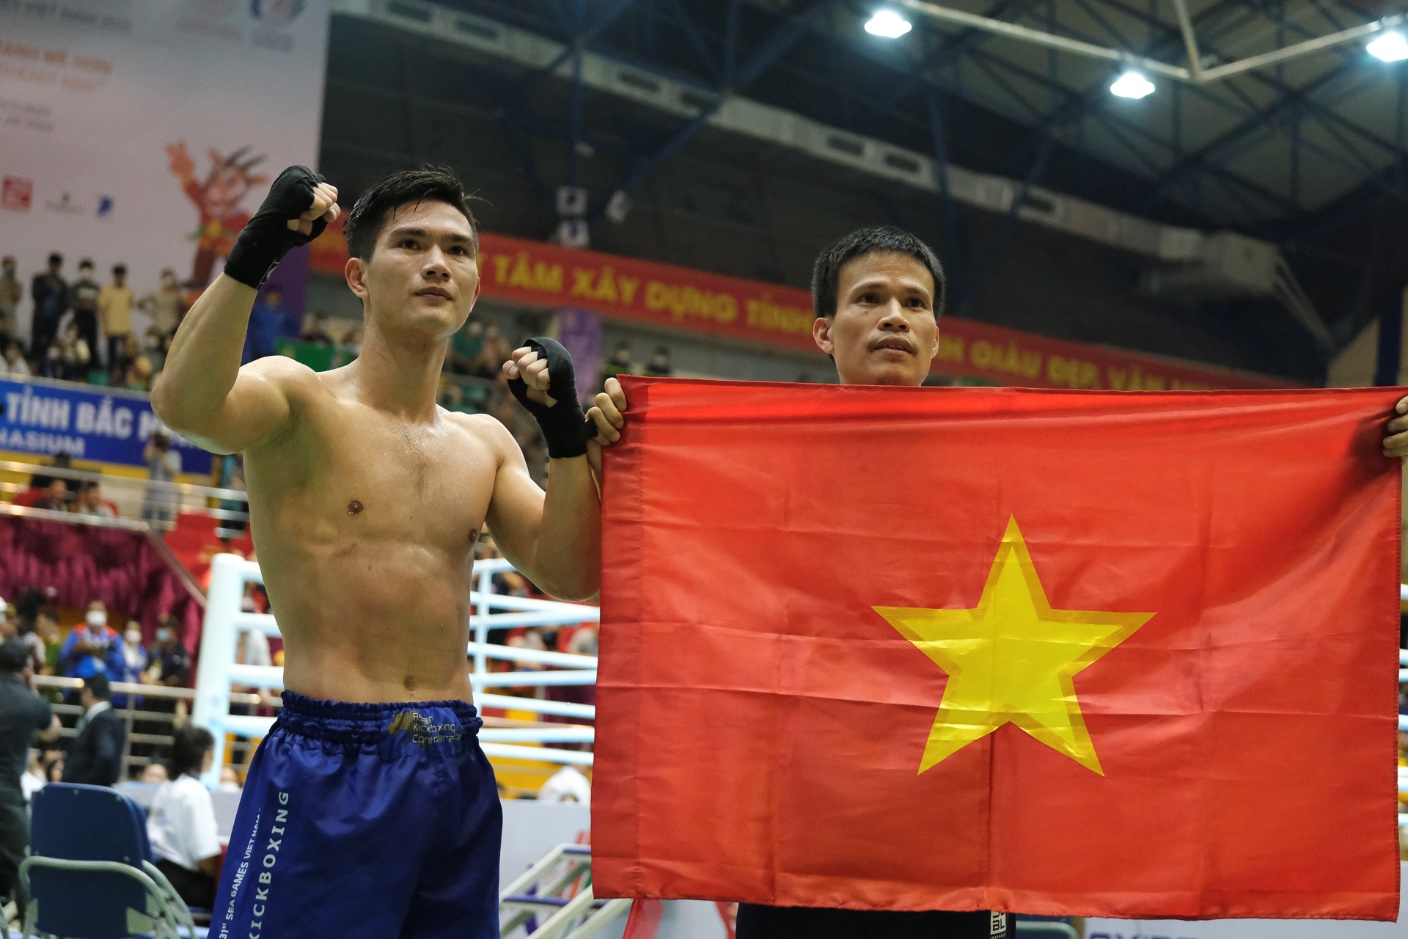 Chung kết hạng cân 60kg low kick SEA Games 31 đã được xác định, Nguyễn Quang Huy sẽ gặp đối thủ Thái Lan Valsirpattana Chaikampanart để quyết định tấm HCV